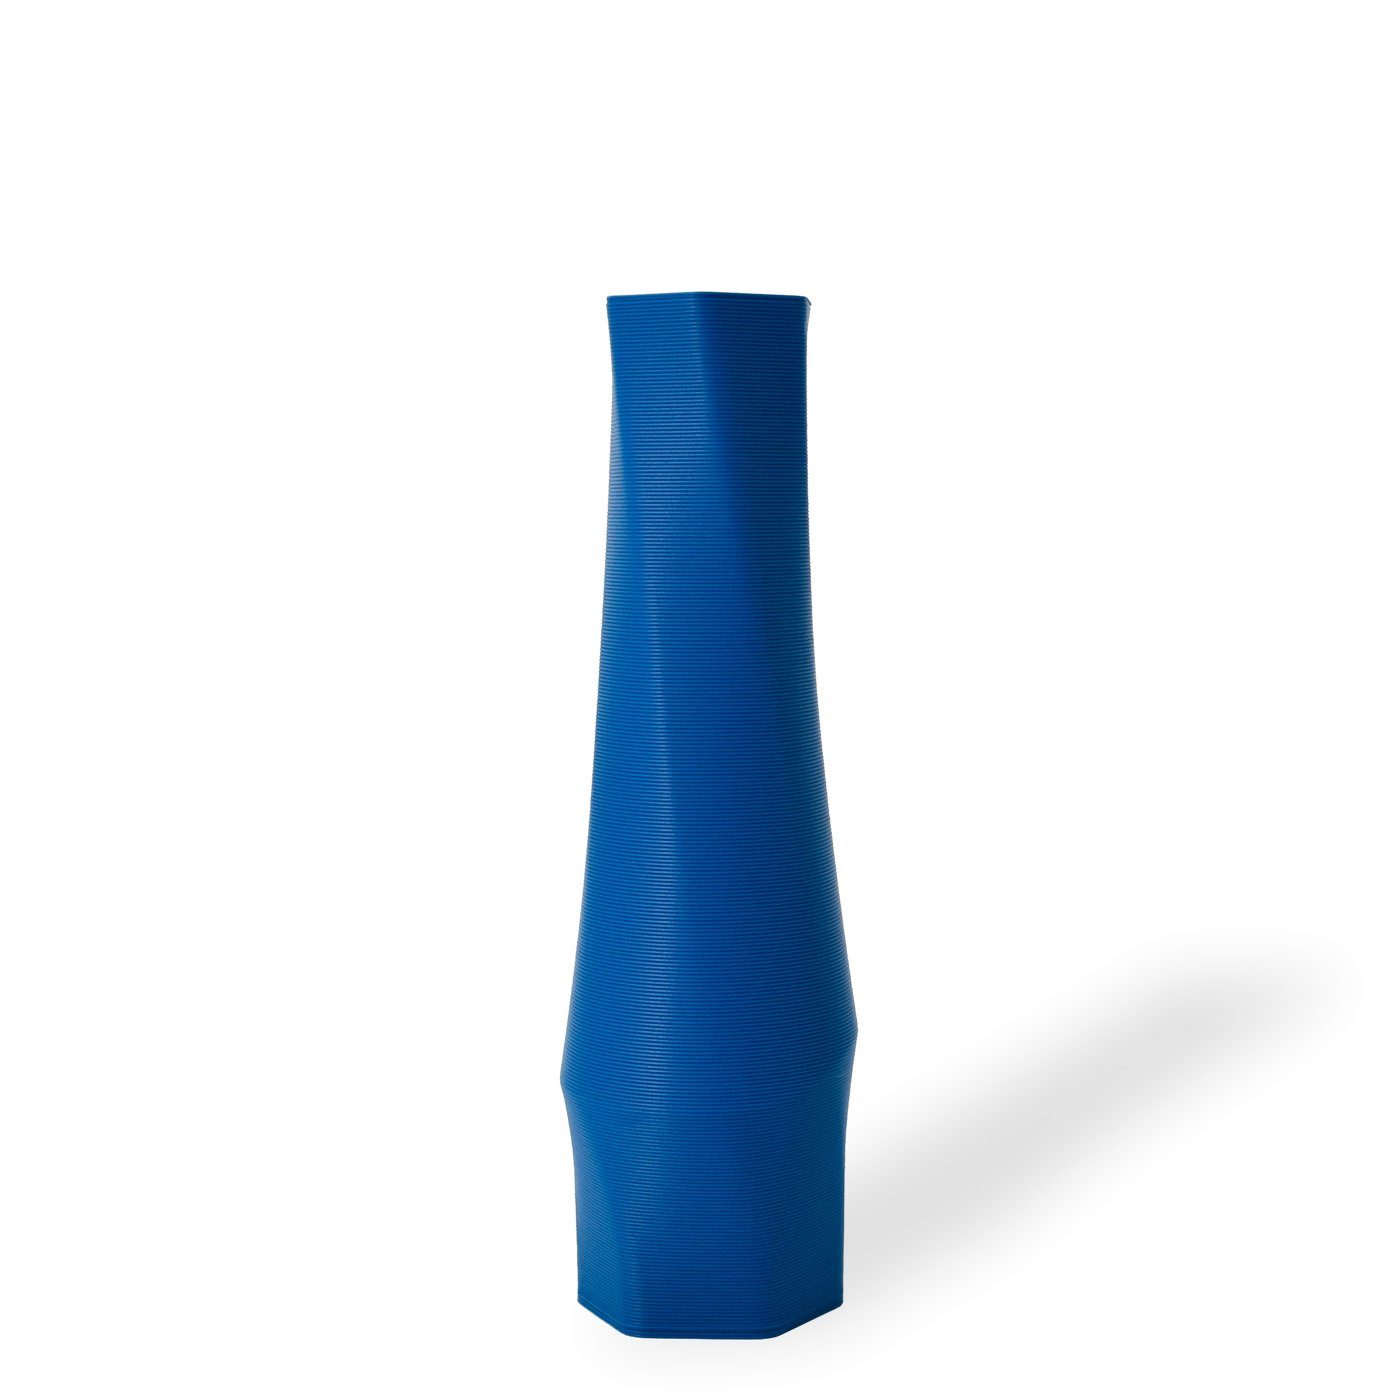 Shapes - Decorations Dekovase the vase - hexagon (basic), 3D Vasen, viele Farben, 100% 3D-Druck (Einzelmodell, 1 Vase), Wasserdicht; Leichte Struktur innerhalb des Materials (Rillung) Blau